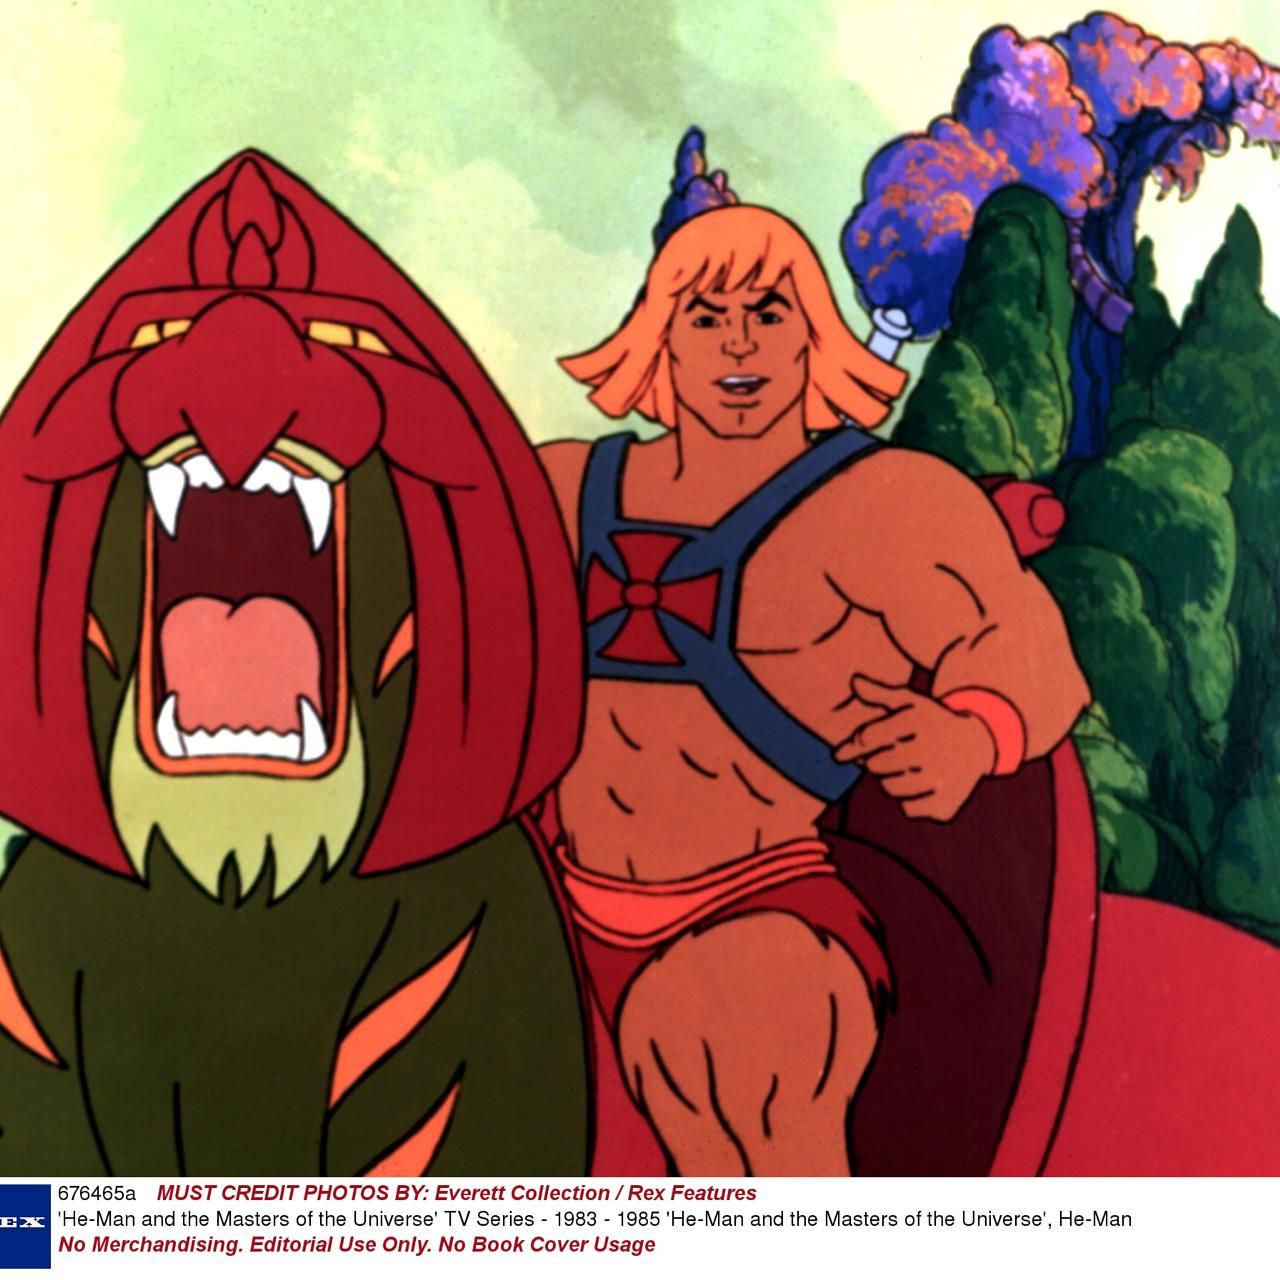 He-Man, Thundercats: '80s, '90s cartoons